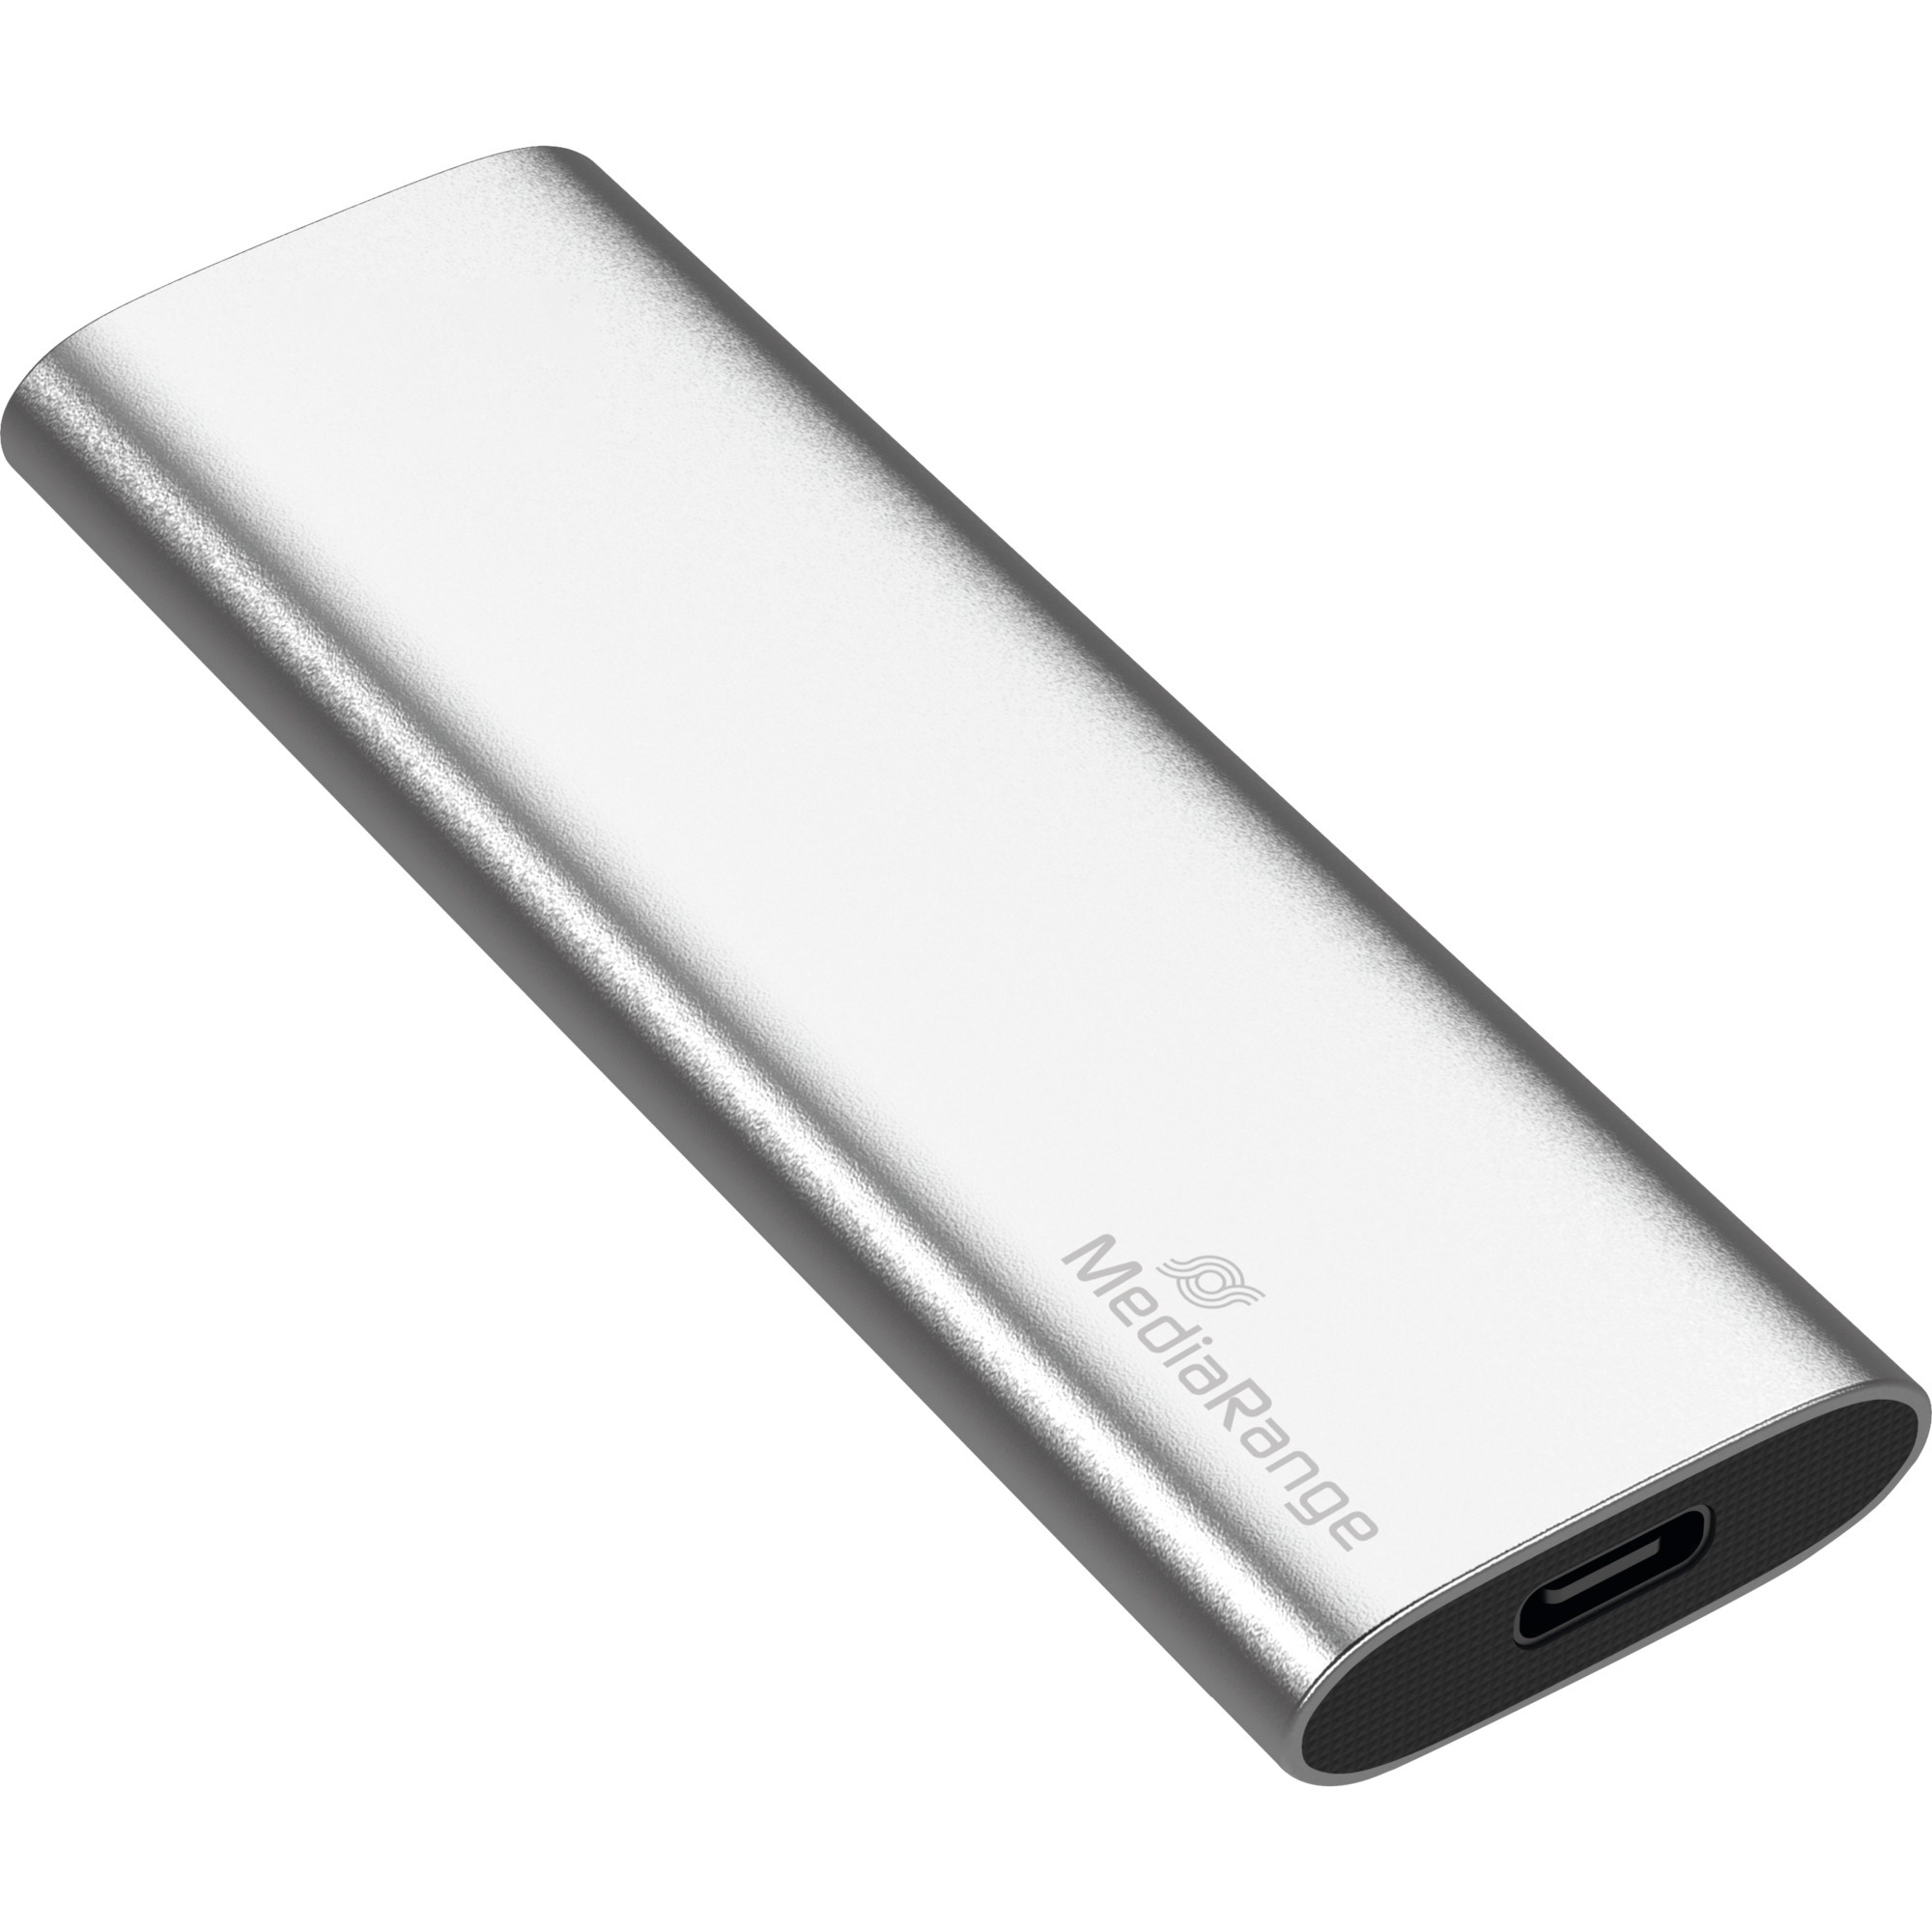 Image of Alternate - 480 GB, Externe SSD online einkaufen bei Alternate